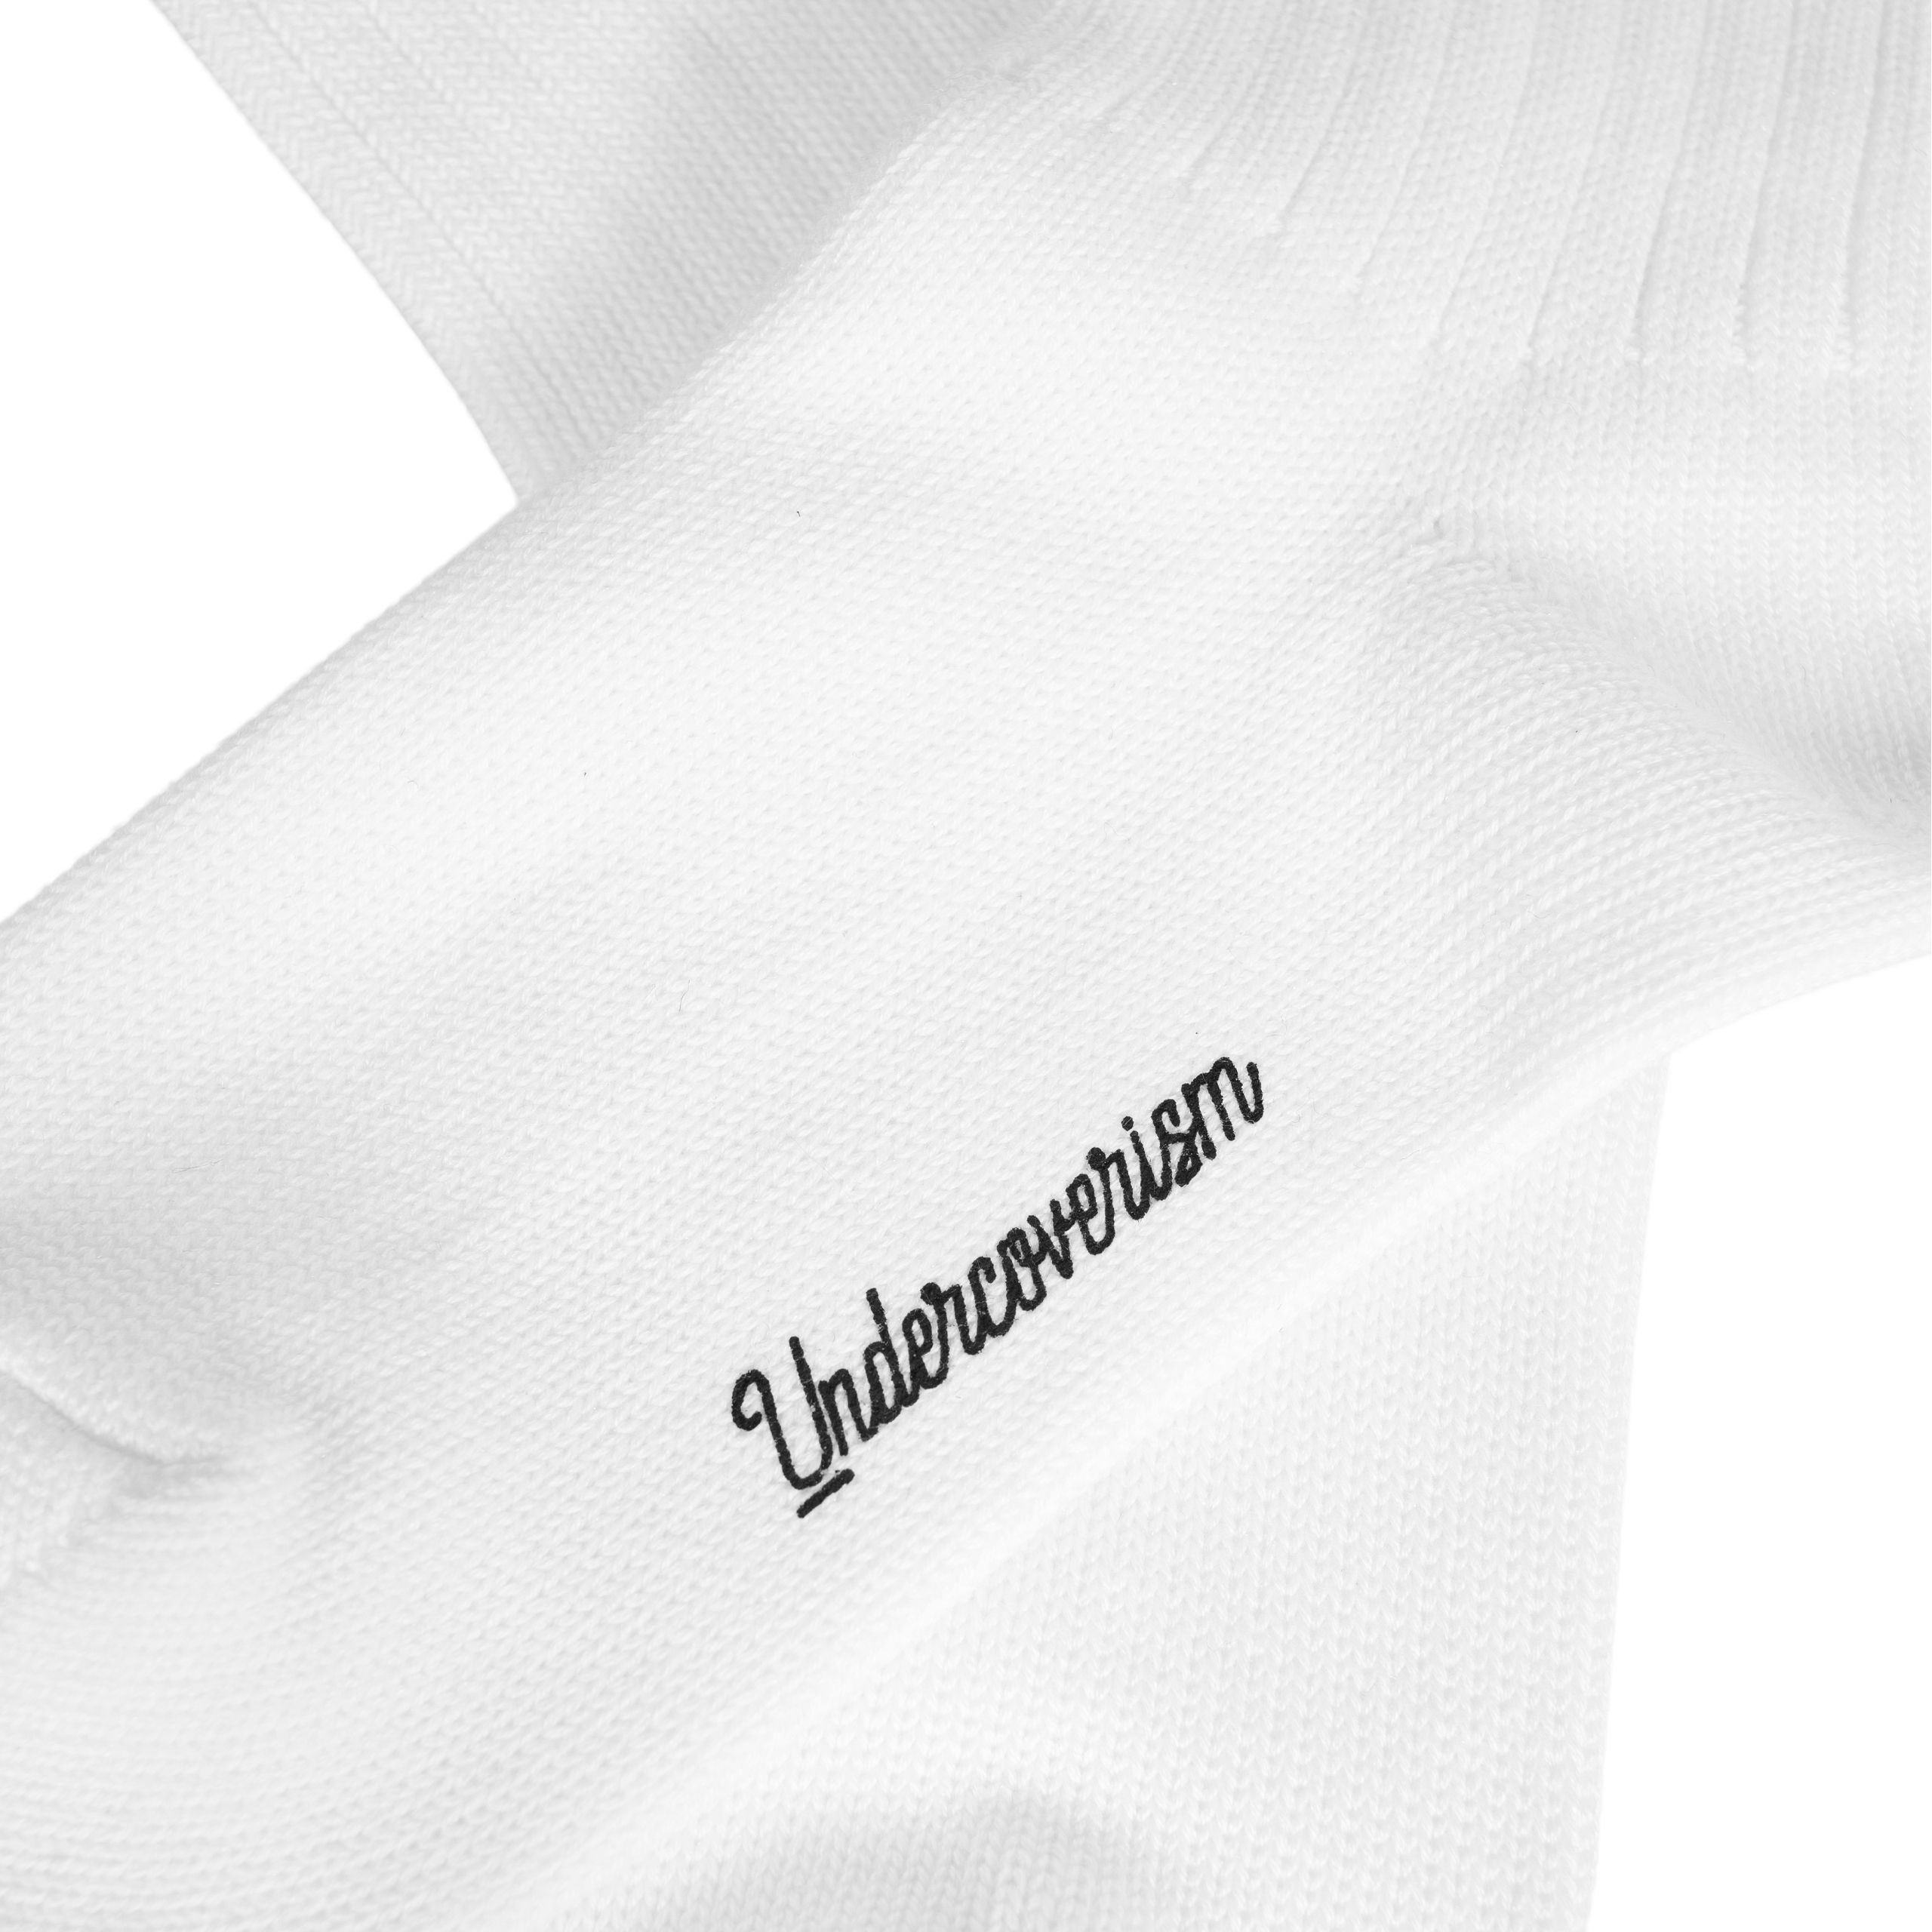 Белые носки с нашивкой Undercover UI1B4L01/wht, размер One Size UI1B4L01/wht - фото 3